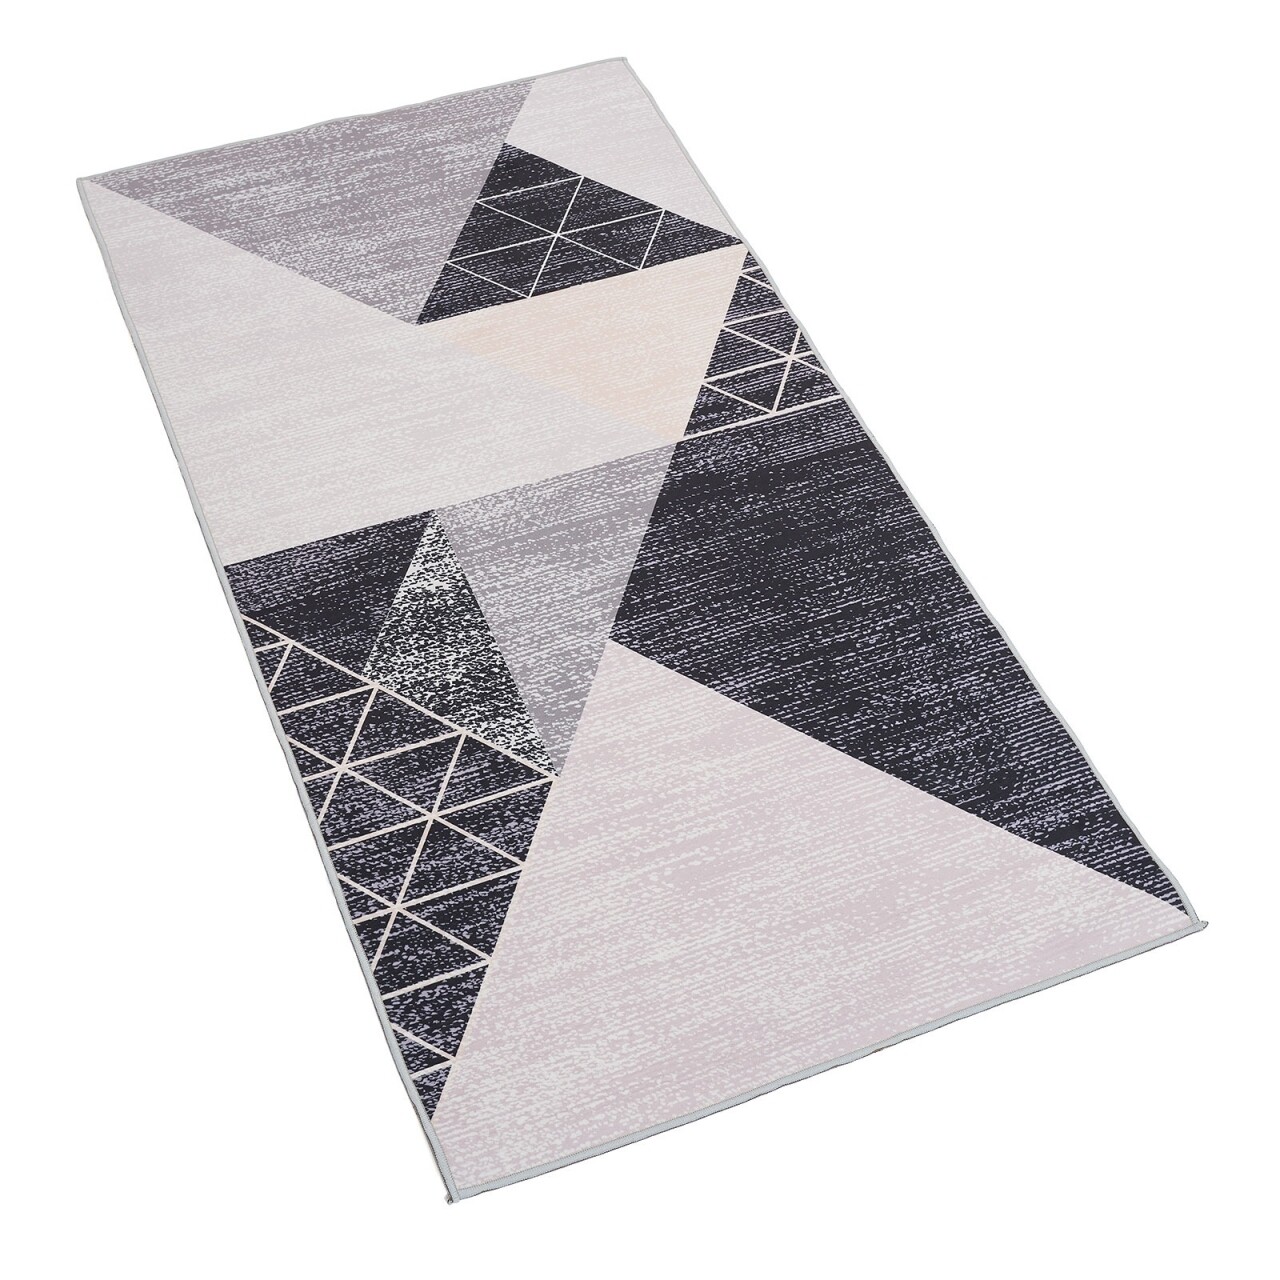 Eva szőnyeg, heinner, 200 x 300 cm, 100% poliészter, szürke